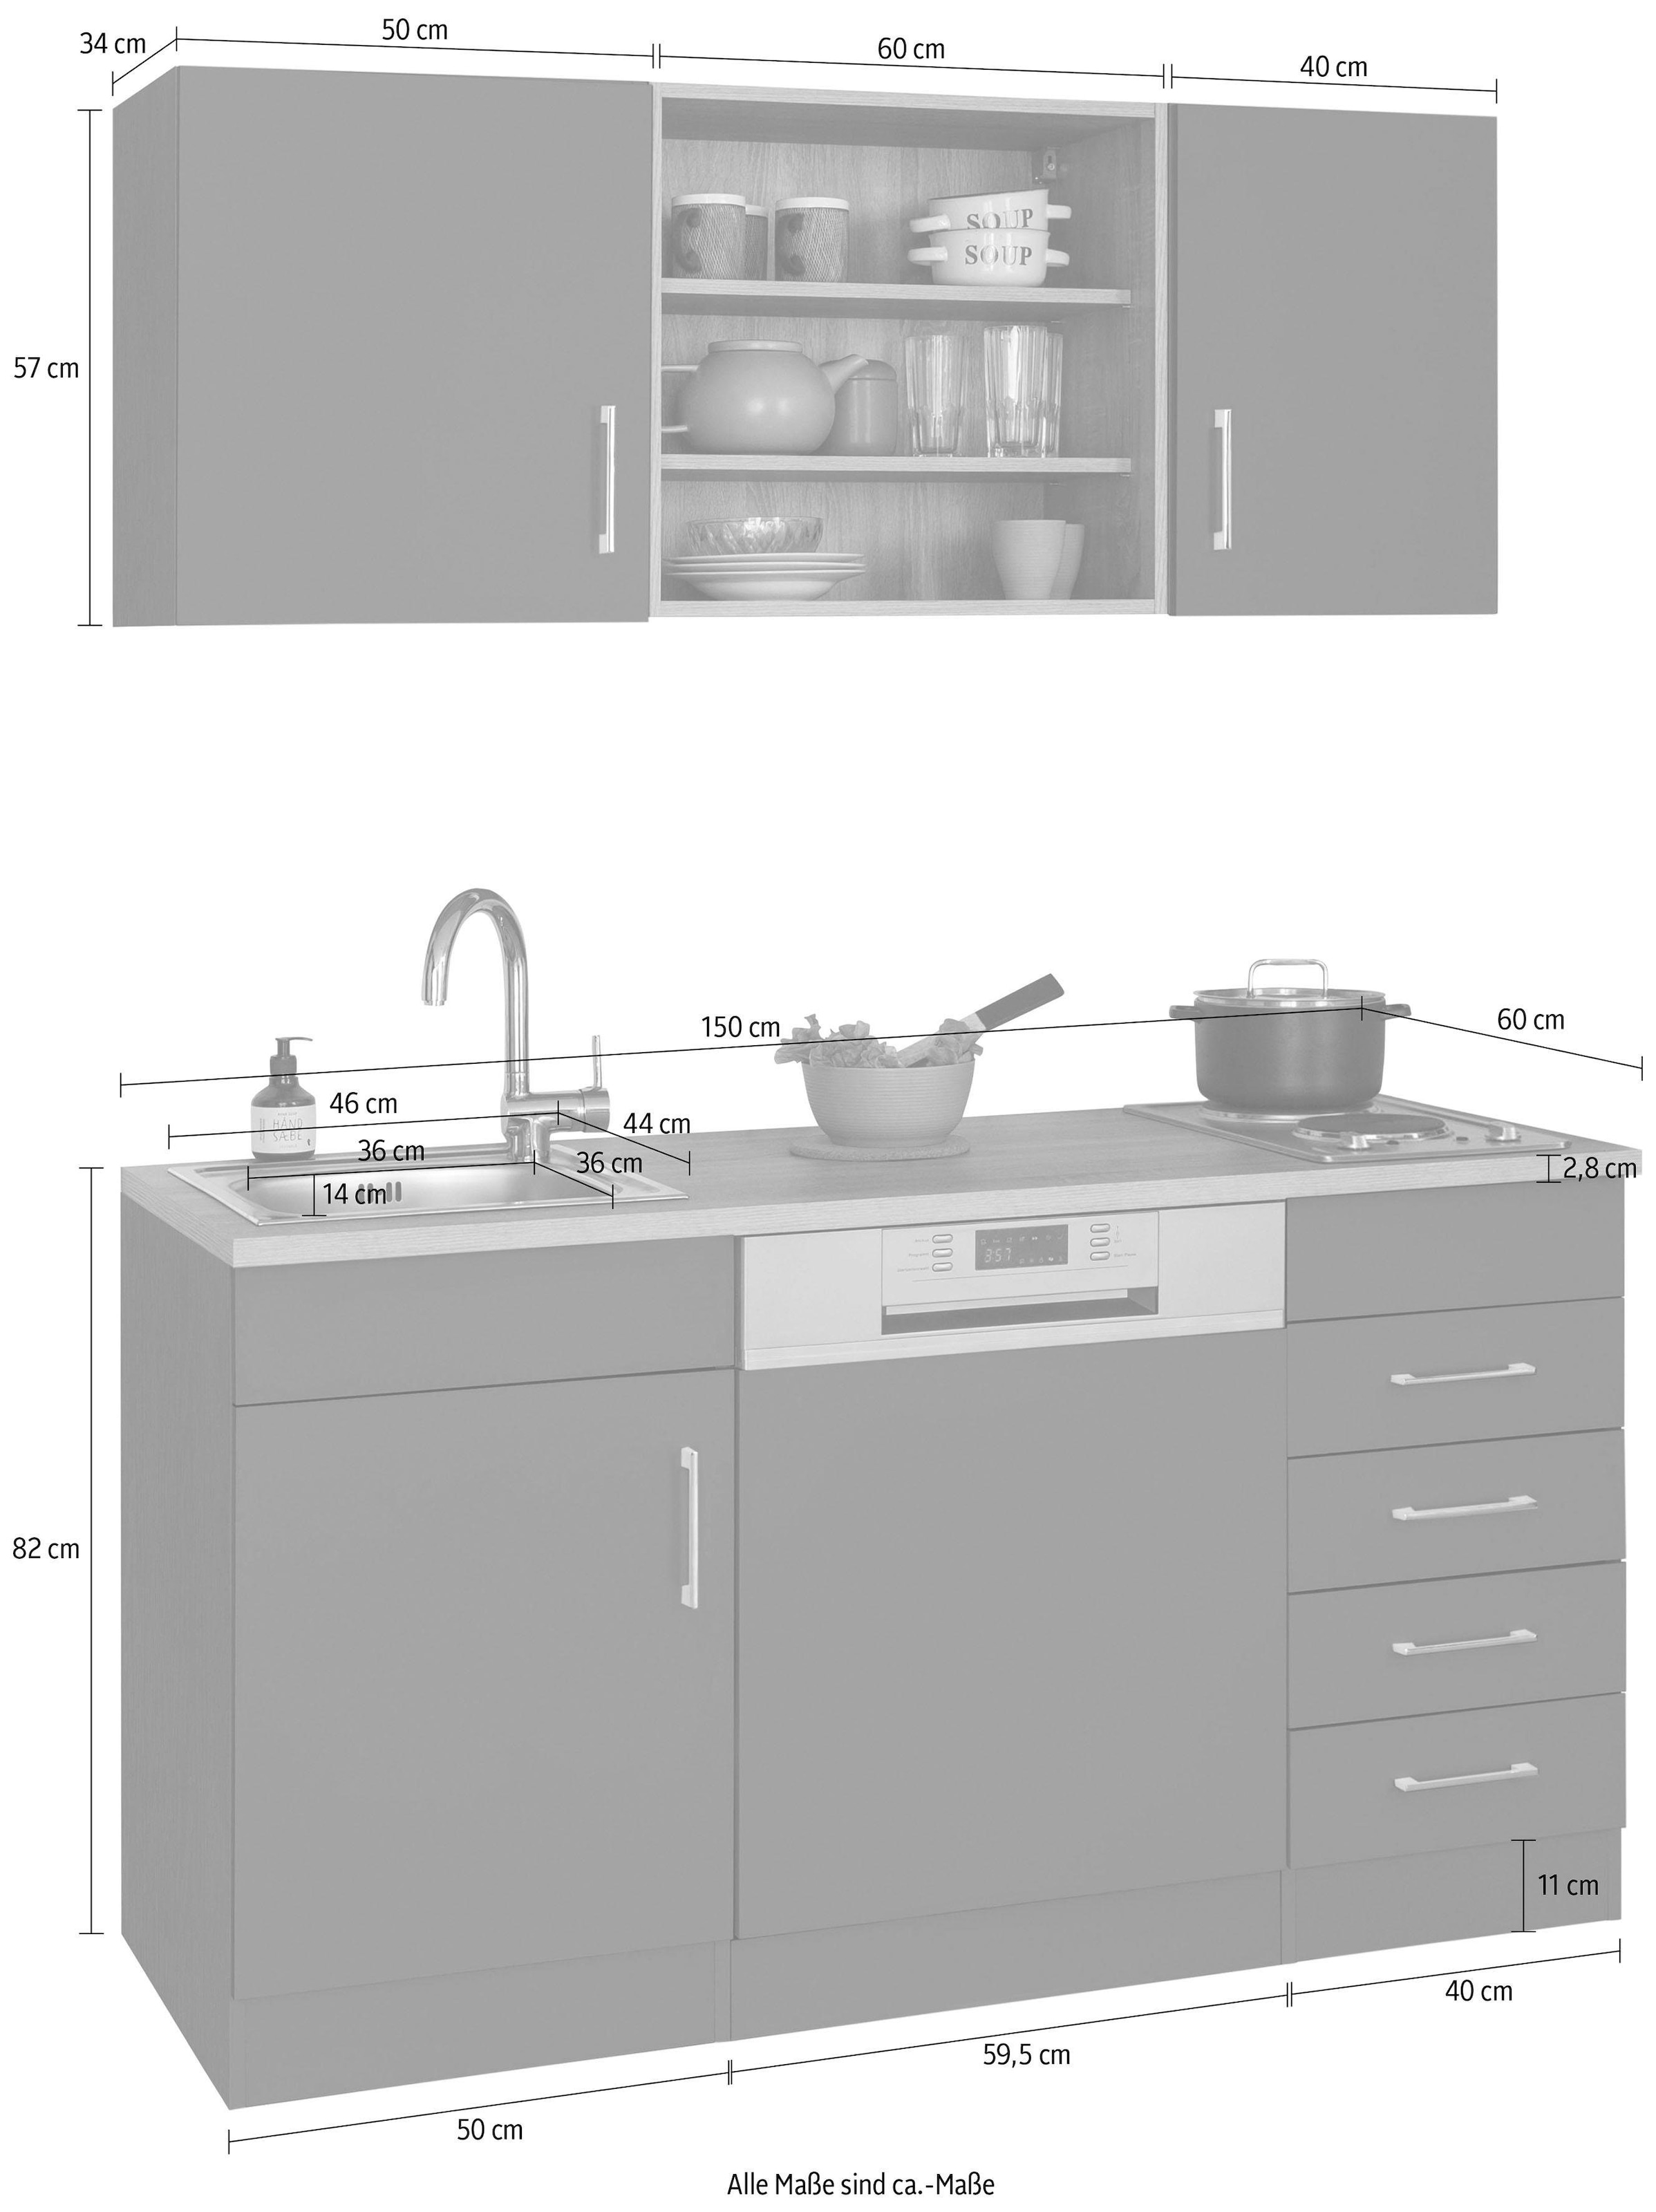 HELD MÖBEL Küche »Mali«, Breite 150 cm, mit E-Geräten jetzt kaufen